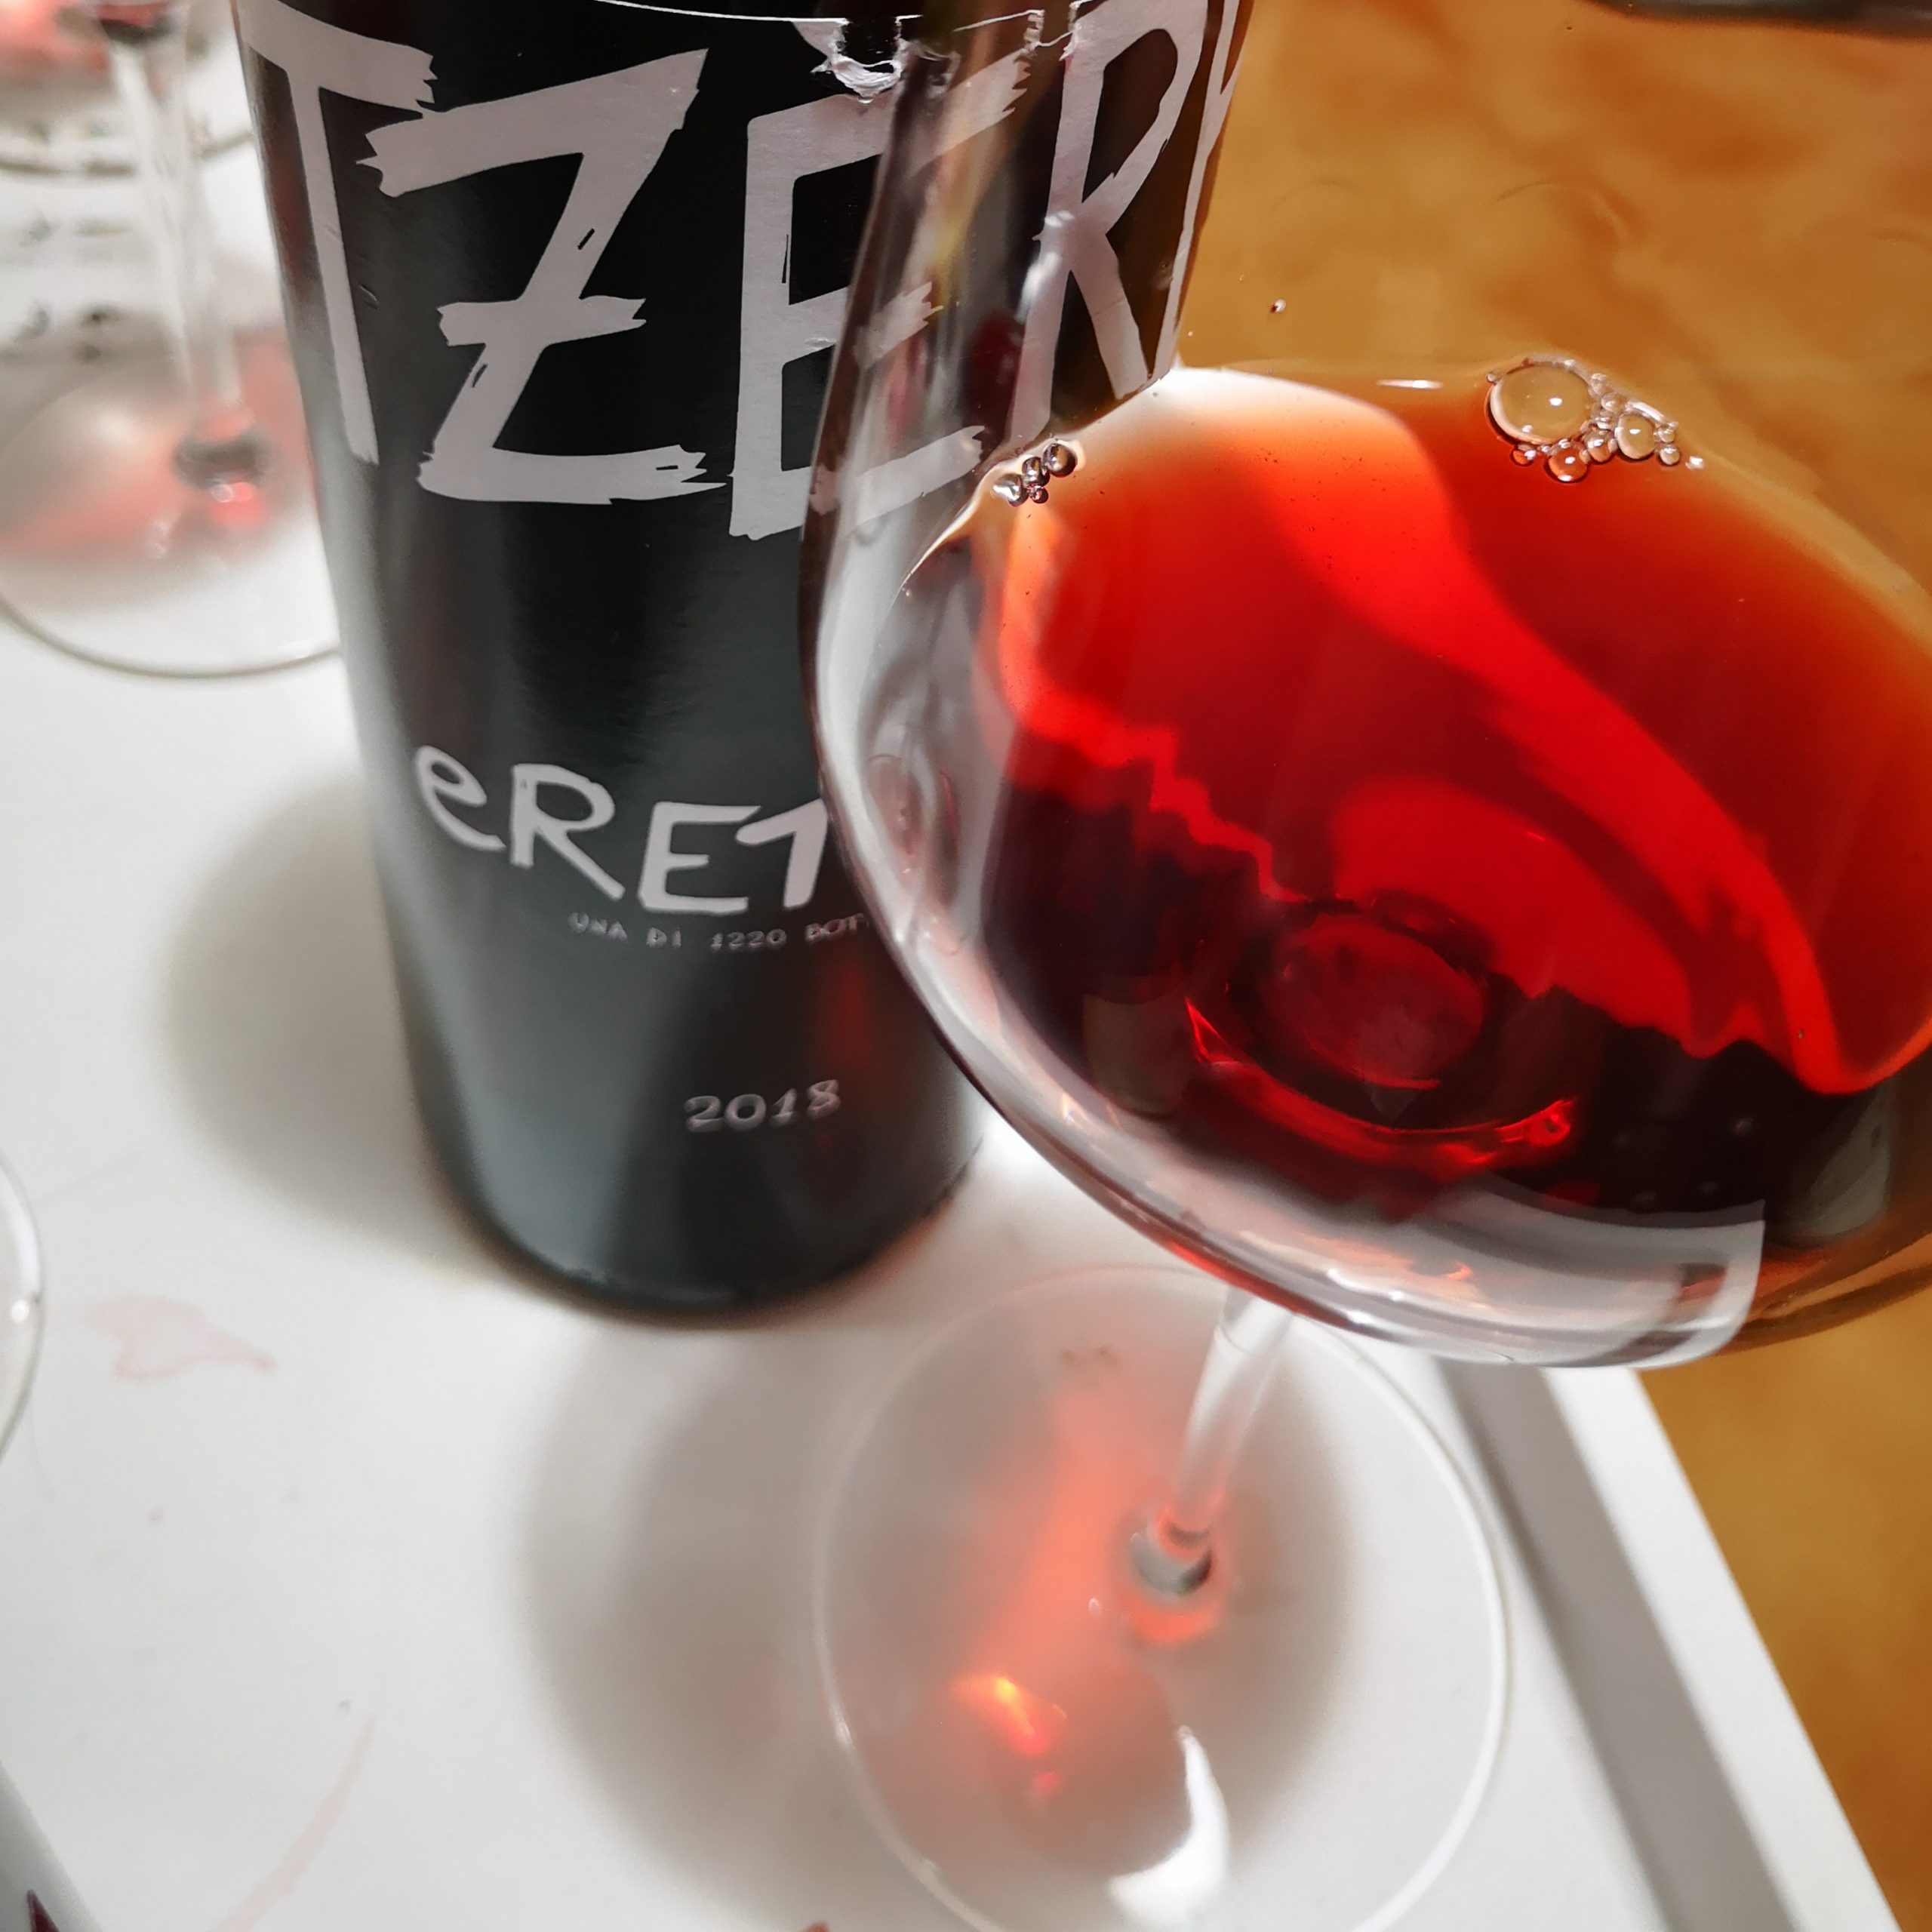 Enonauta/Degustazione di Vino #187 - TZÈRB eRETICO 2018 - Orto Tellinum | Una bellissima sorpresa dalla Valtellina